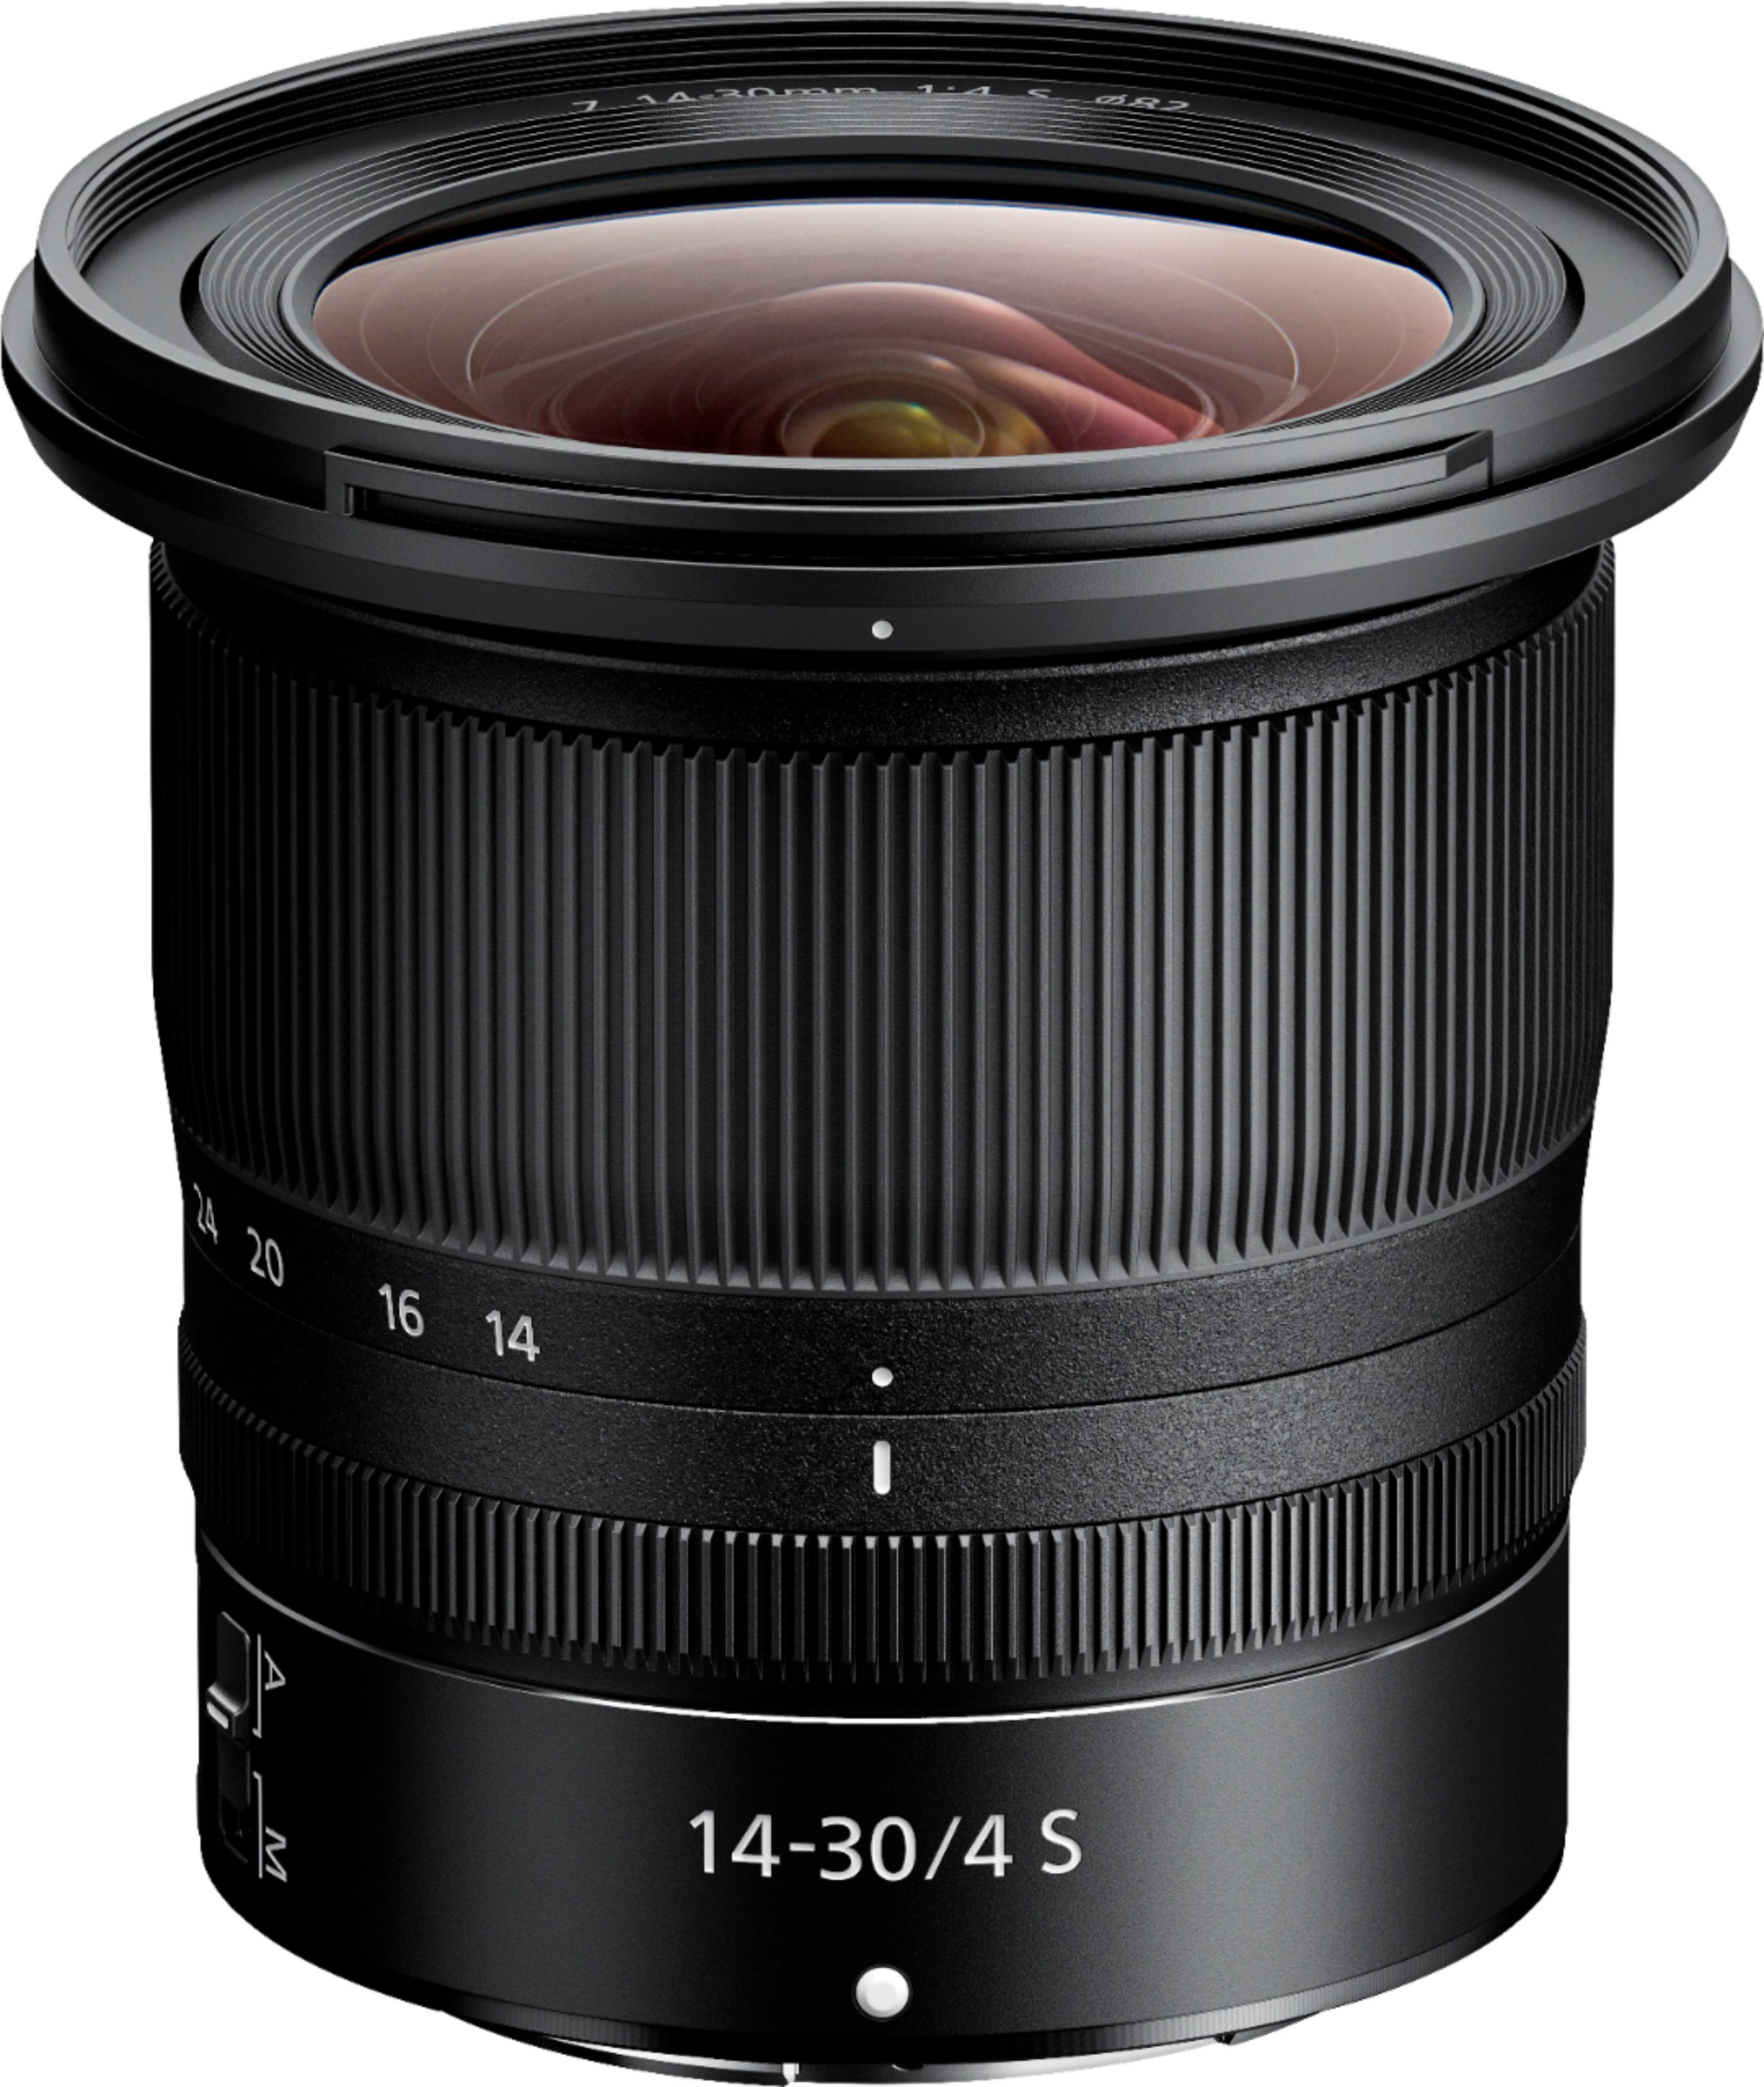 NIKKOR Z 14-30mm f/4.0 S Zoom Lens for Nikon Z Cameras - Black